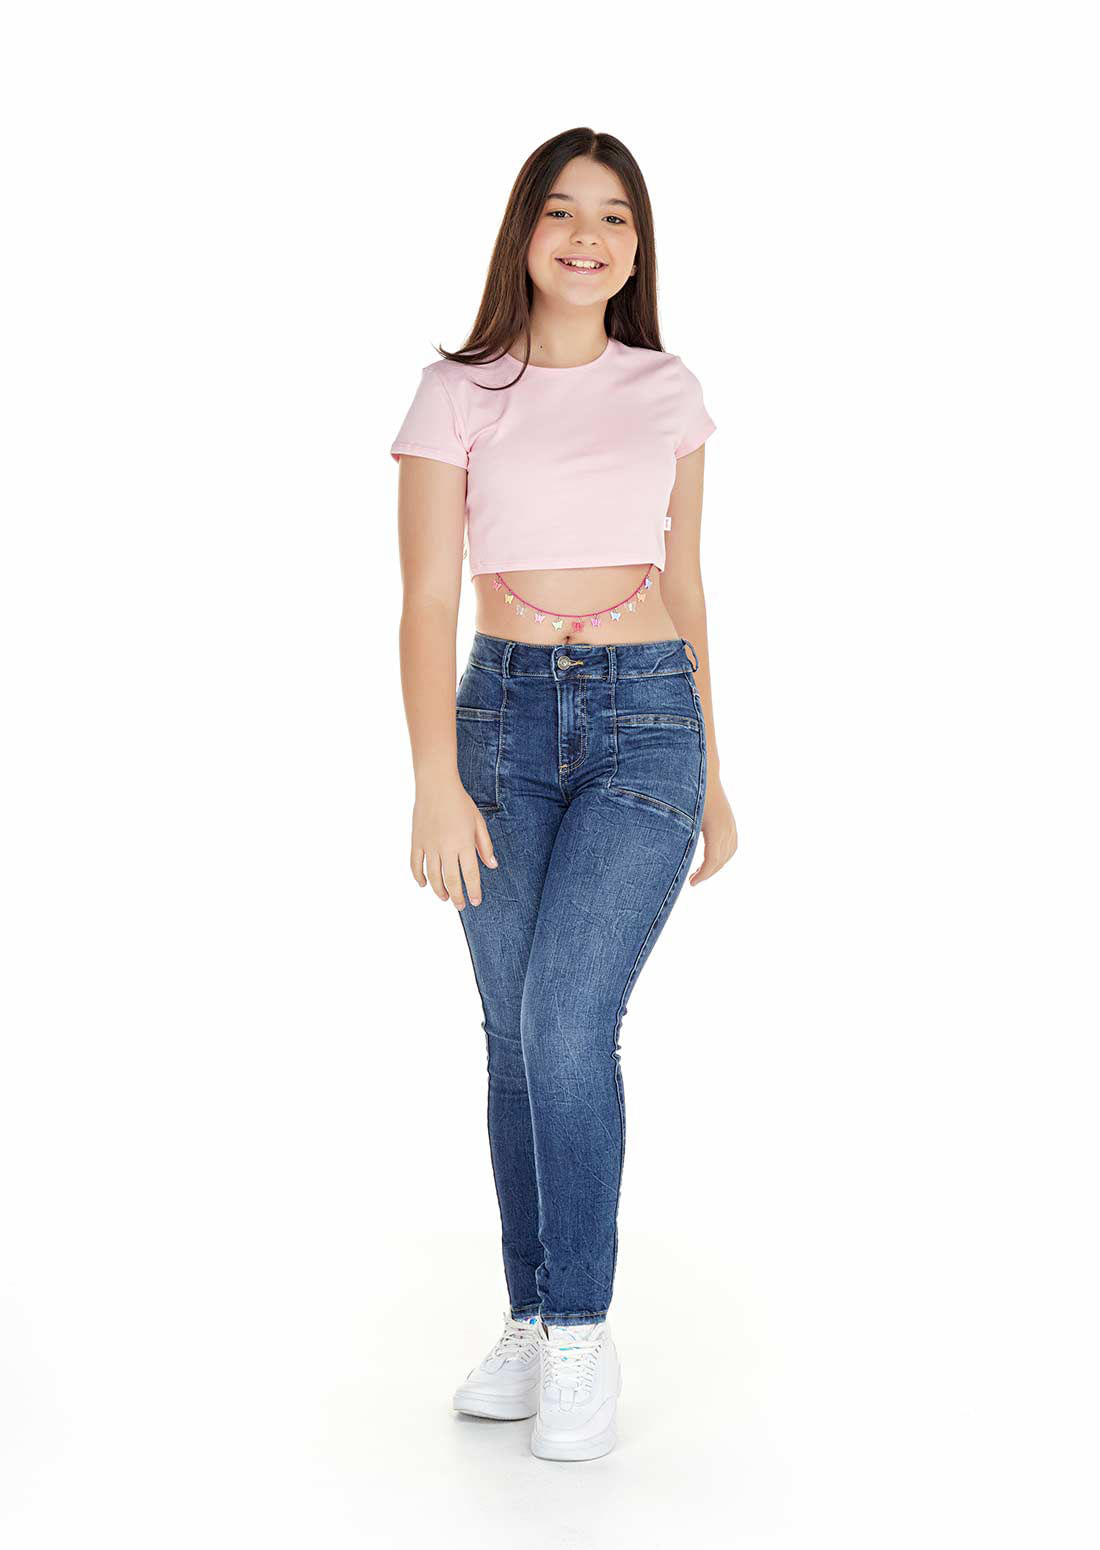 Ropa y jeans para niñas adolescentes | Jeans